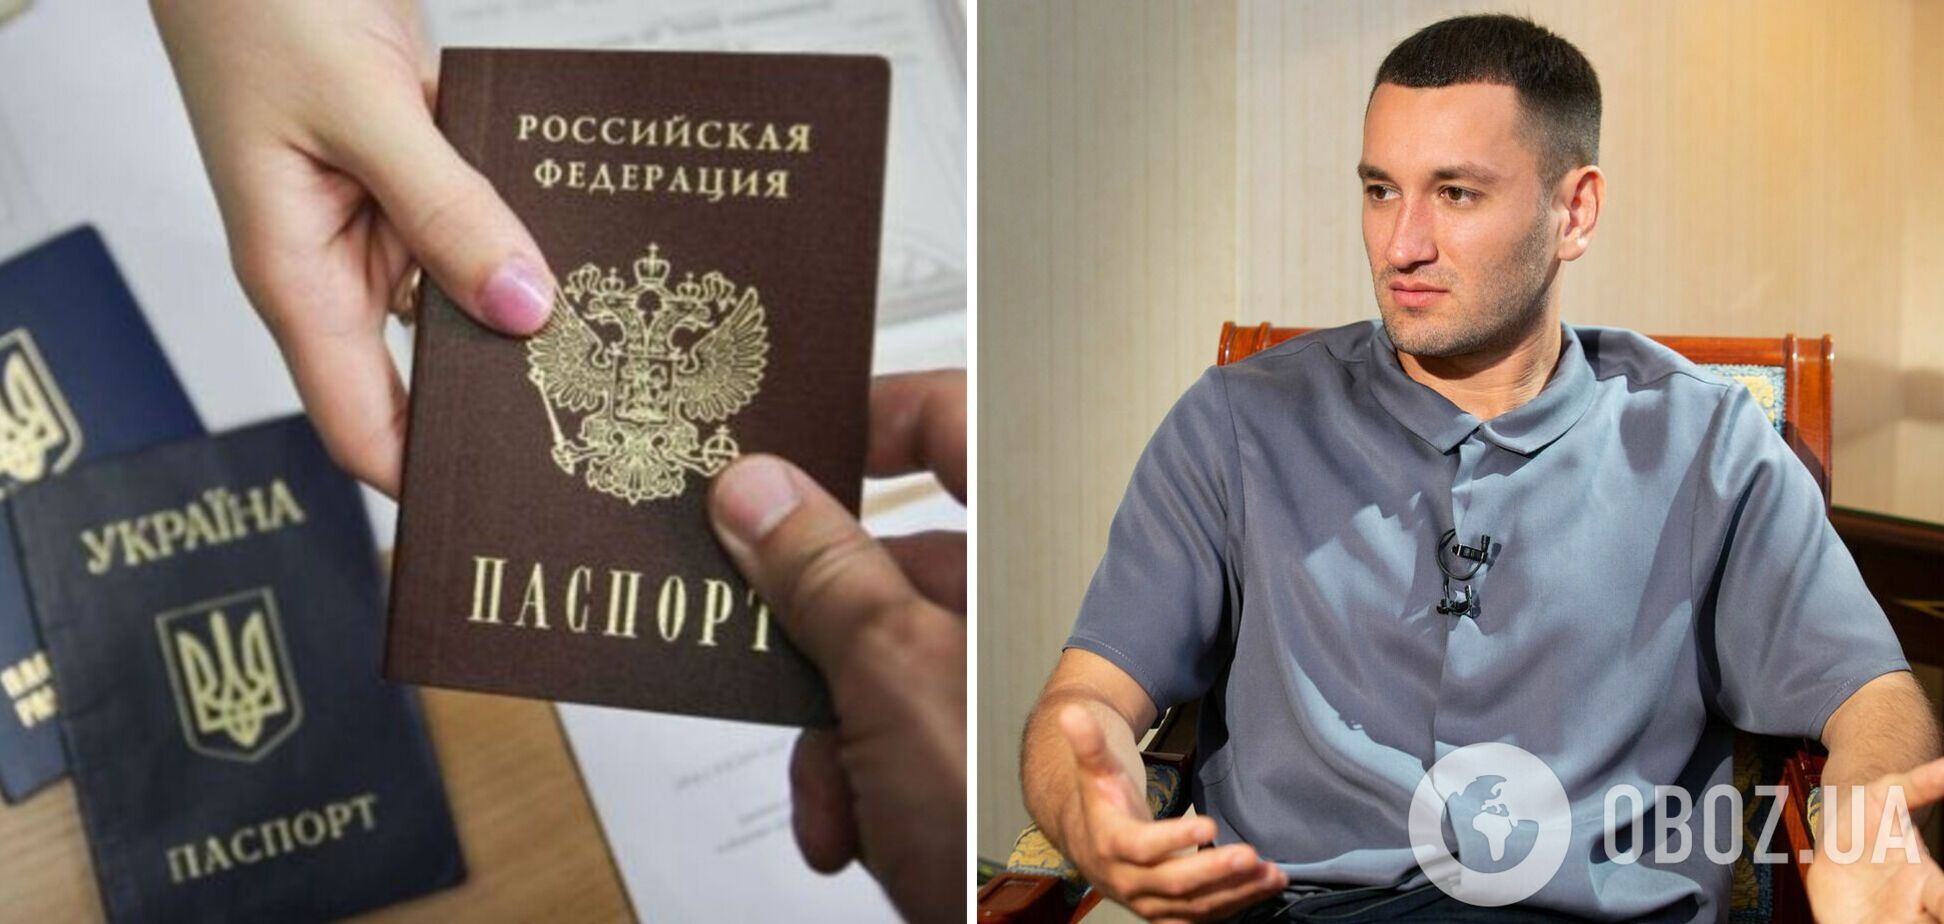 Український продюсер Бардаш отримає 'русский паспорт' і змінить ім'я